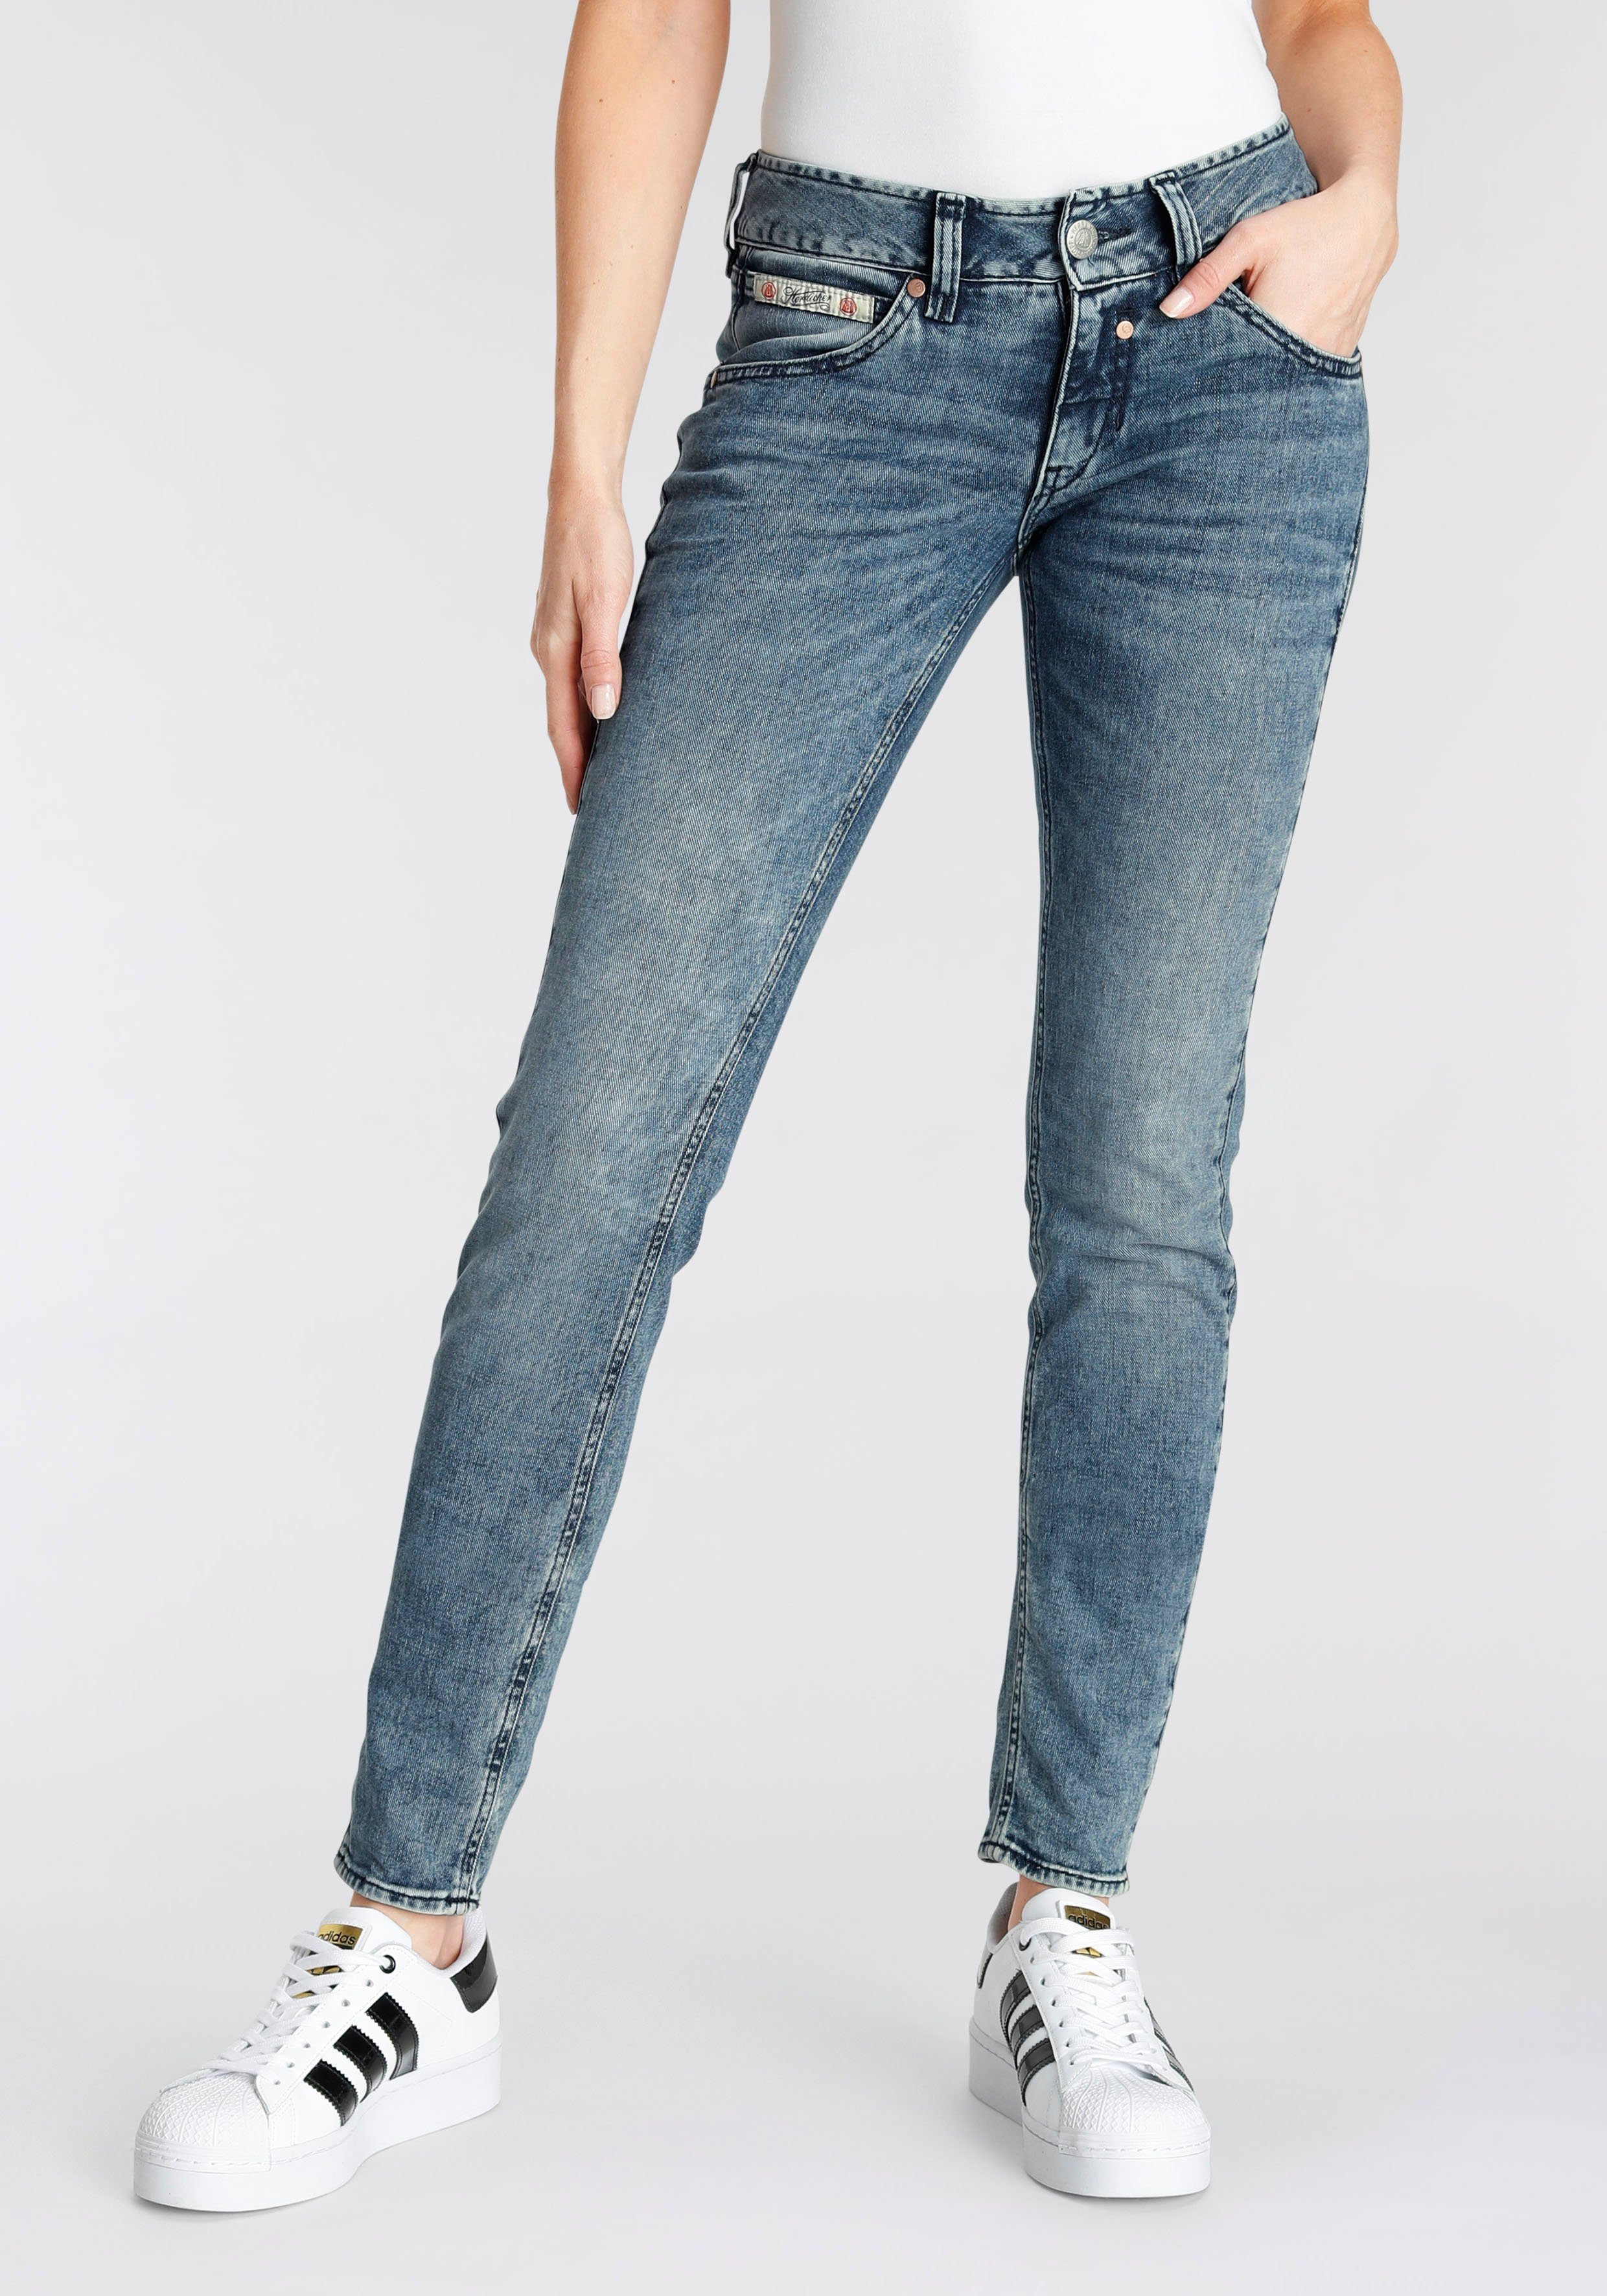 Herrlicher Slim-fit-Jeans TOUCH mit verzierten Gesäßtaschen